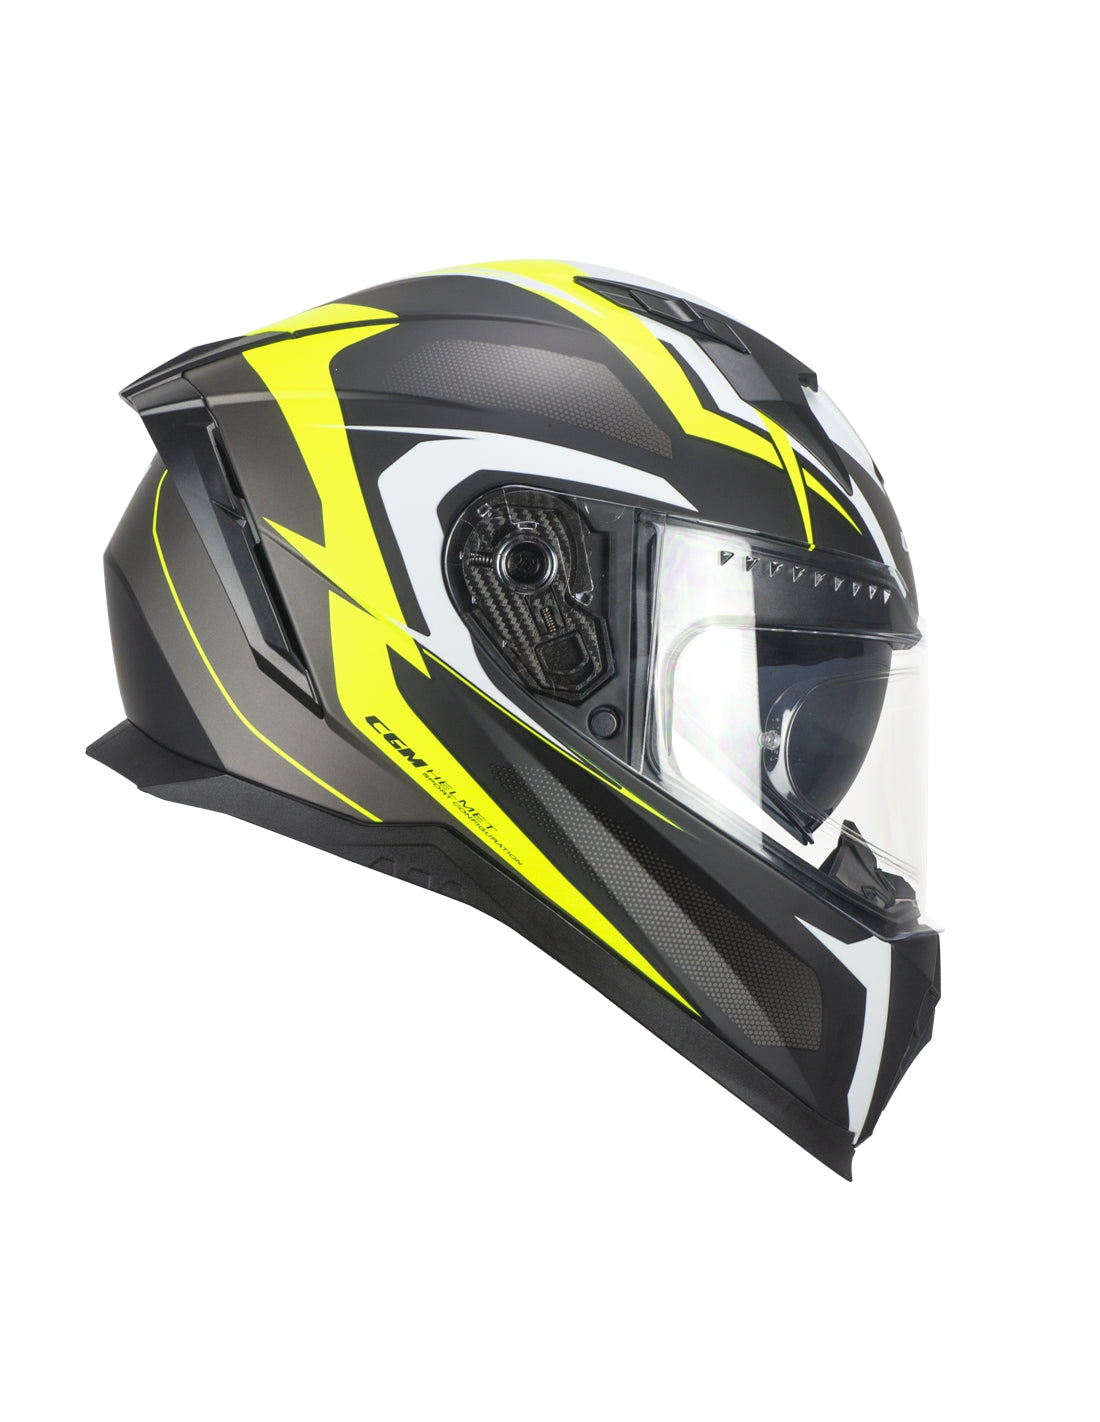 Soluzione di casco moto integrale CGM 311G per motociclisti seri